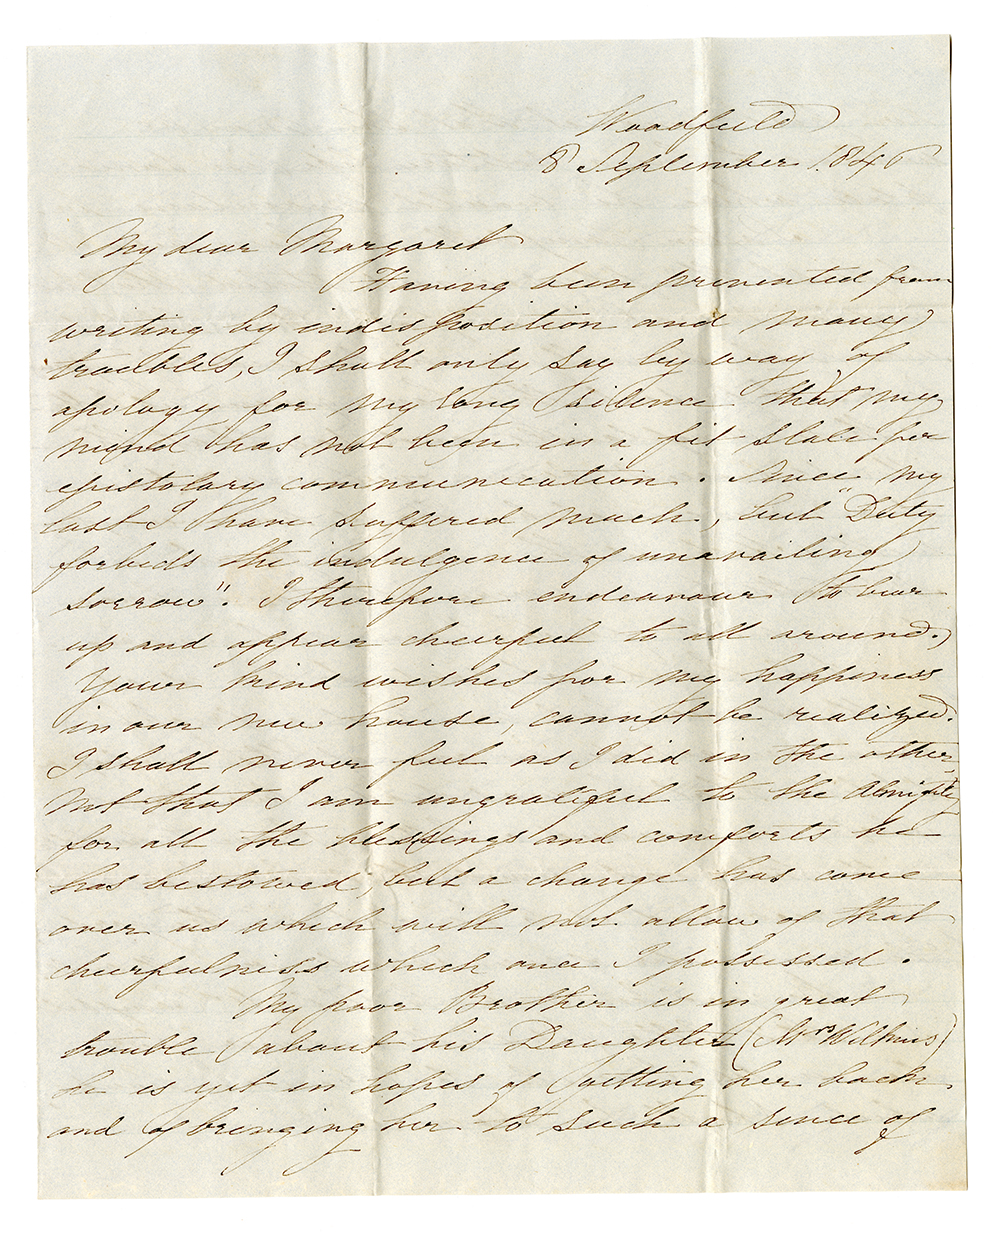 Lettre manuscrite jaunie de Harriet Sheppard écrite à Woodfield le 8 Septembre 1846.